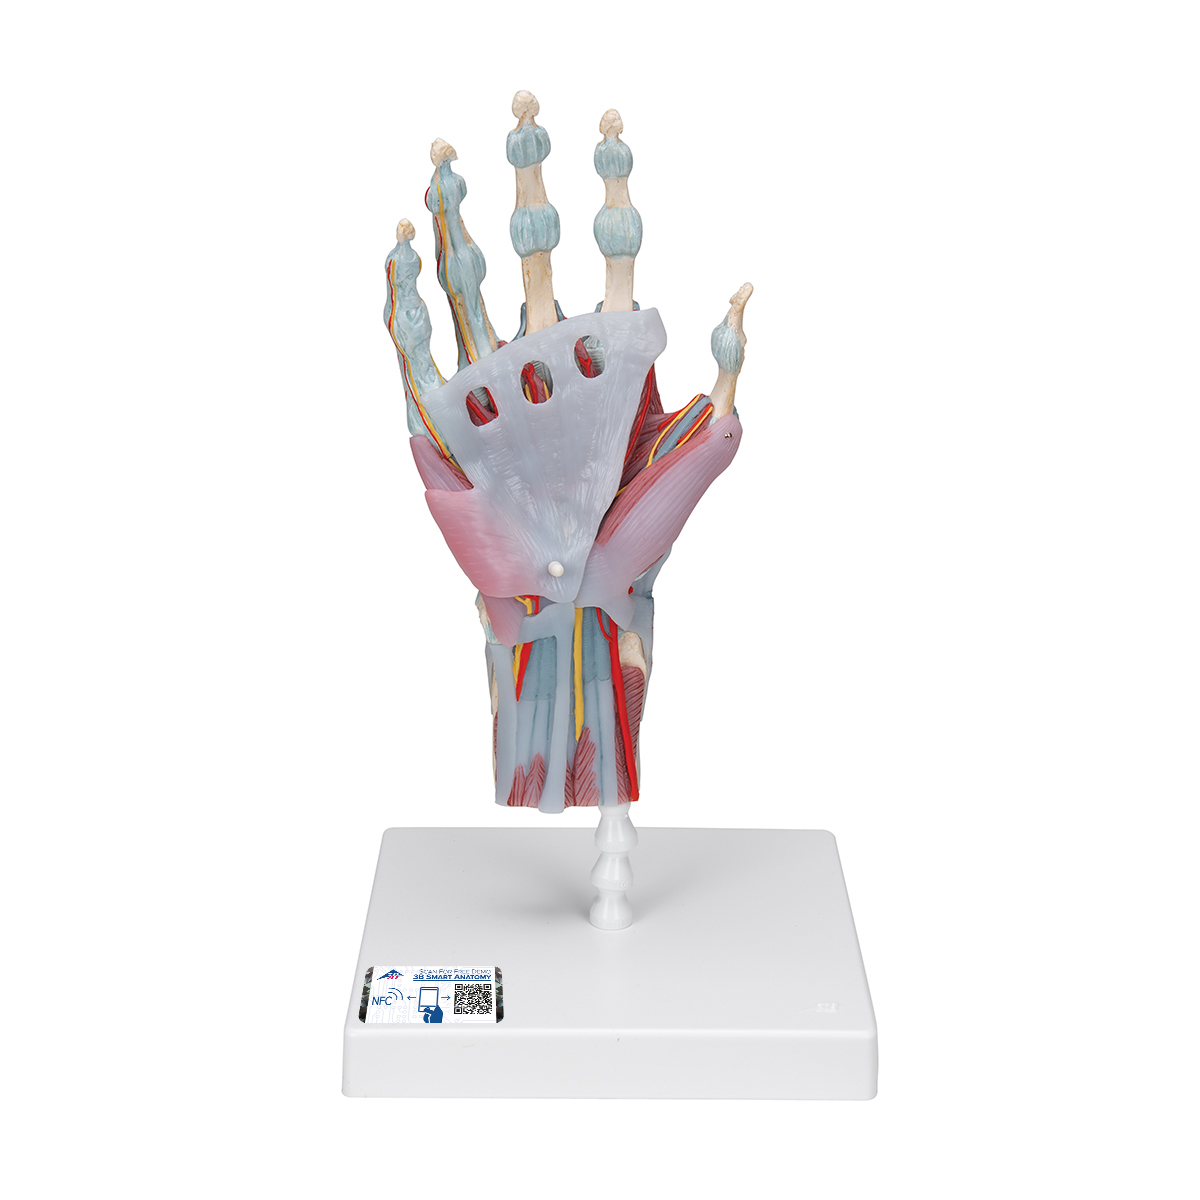 Modell des Handskeletts mit Bändern & Muskeln - 3B Smart Anatomy, Bestellnummer 1000358, M33/1, 3B Scientific